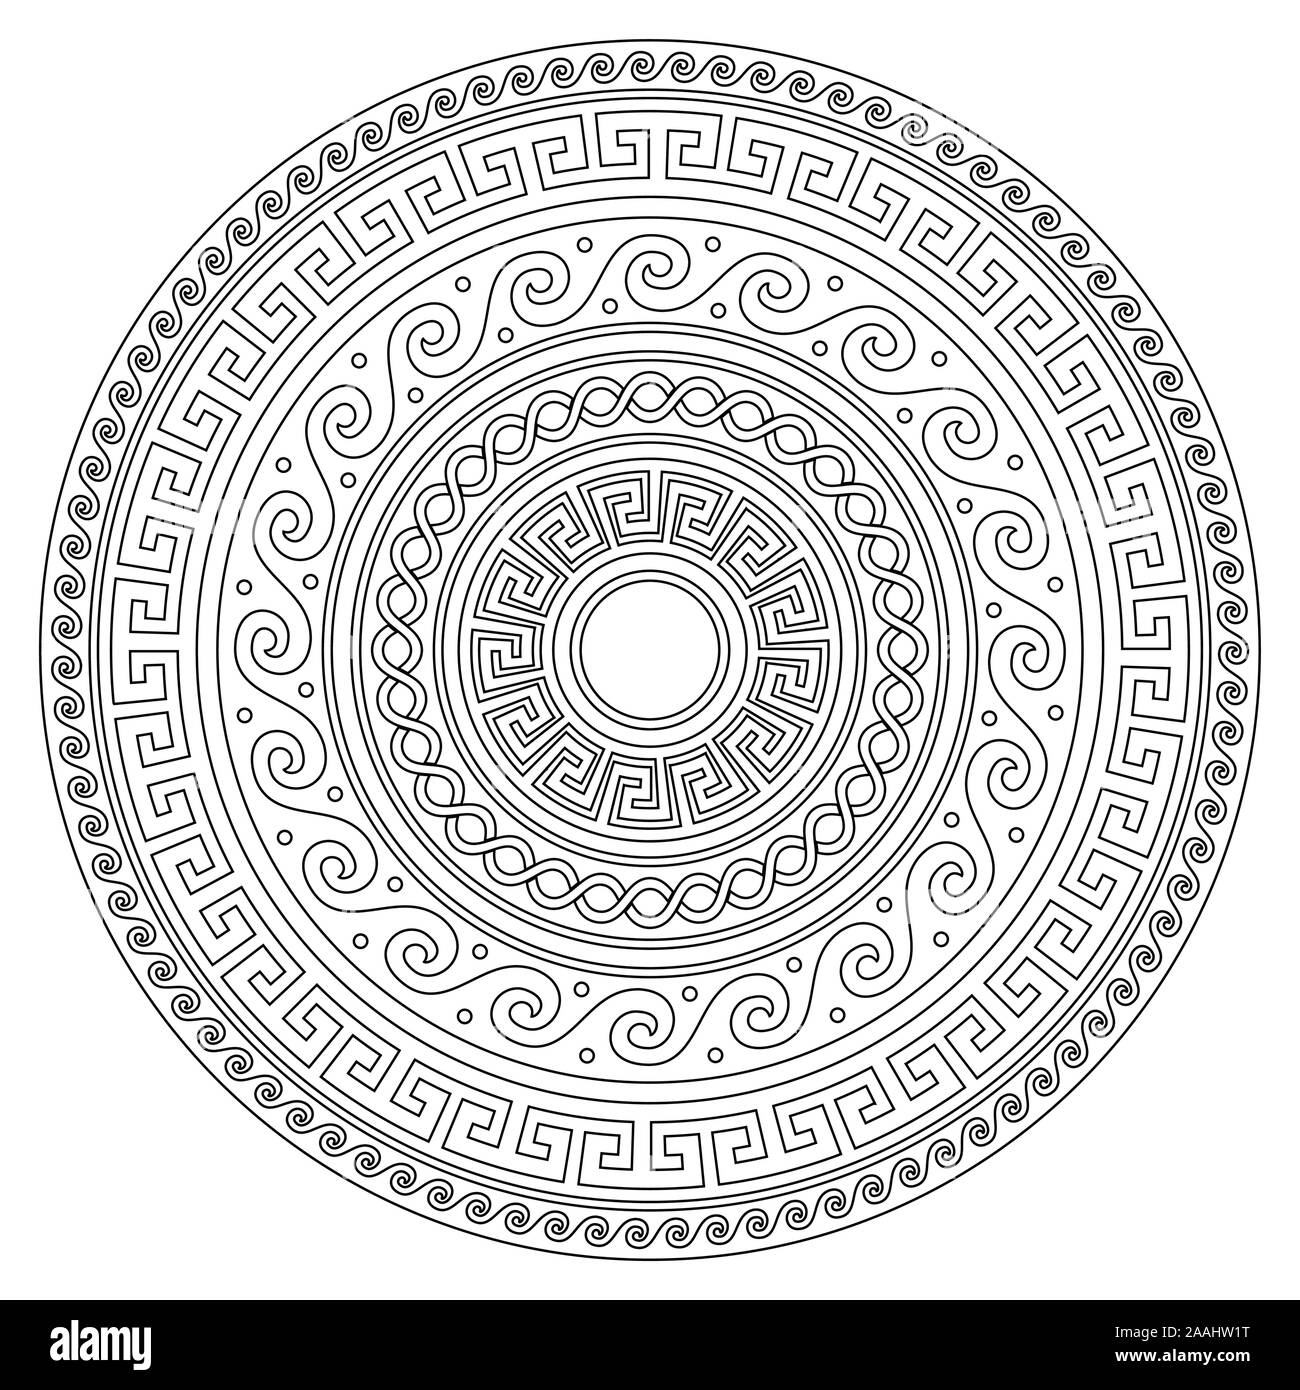 Il Greco antico chiave rotonda mandala pattern con corsa - meandro arte in bianco e nero perfetto per adulti libro da colorare Illustrazione Vettoriale